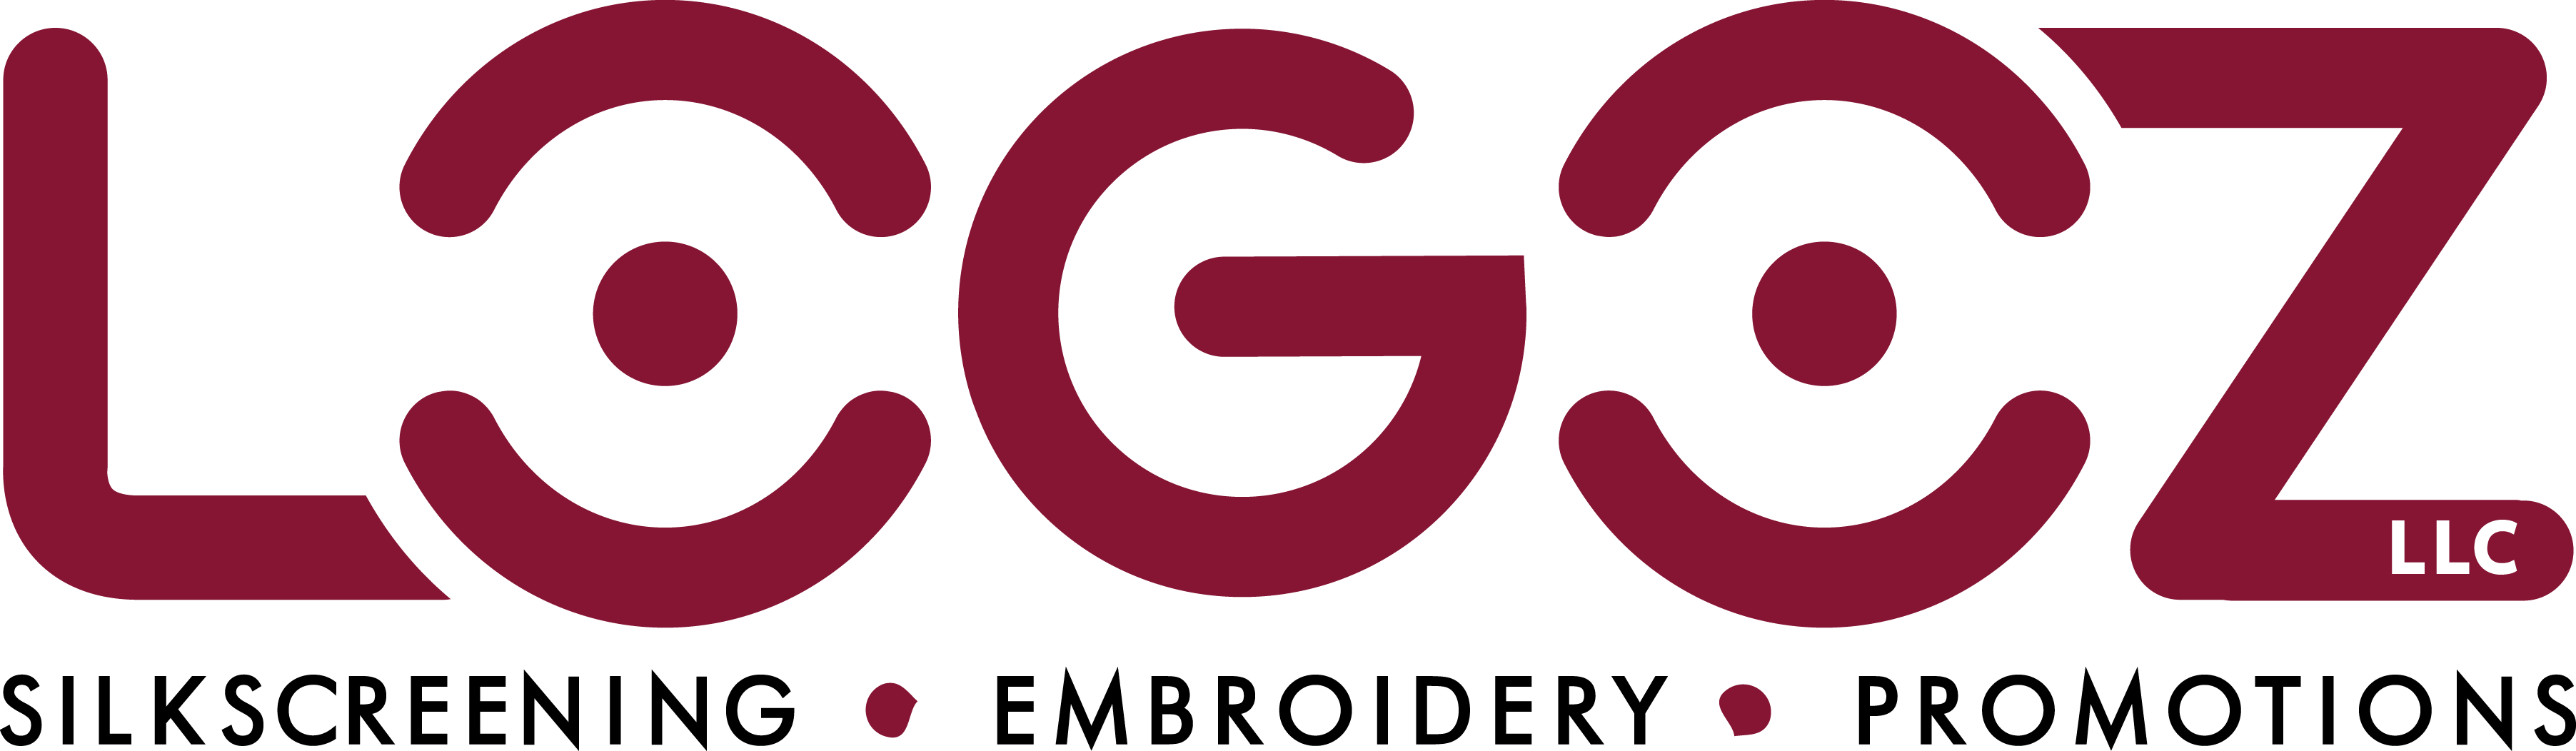 Logoz, LLC's Logo